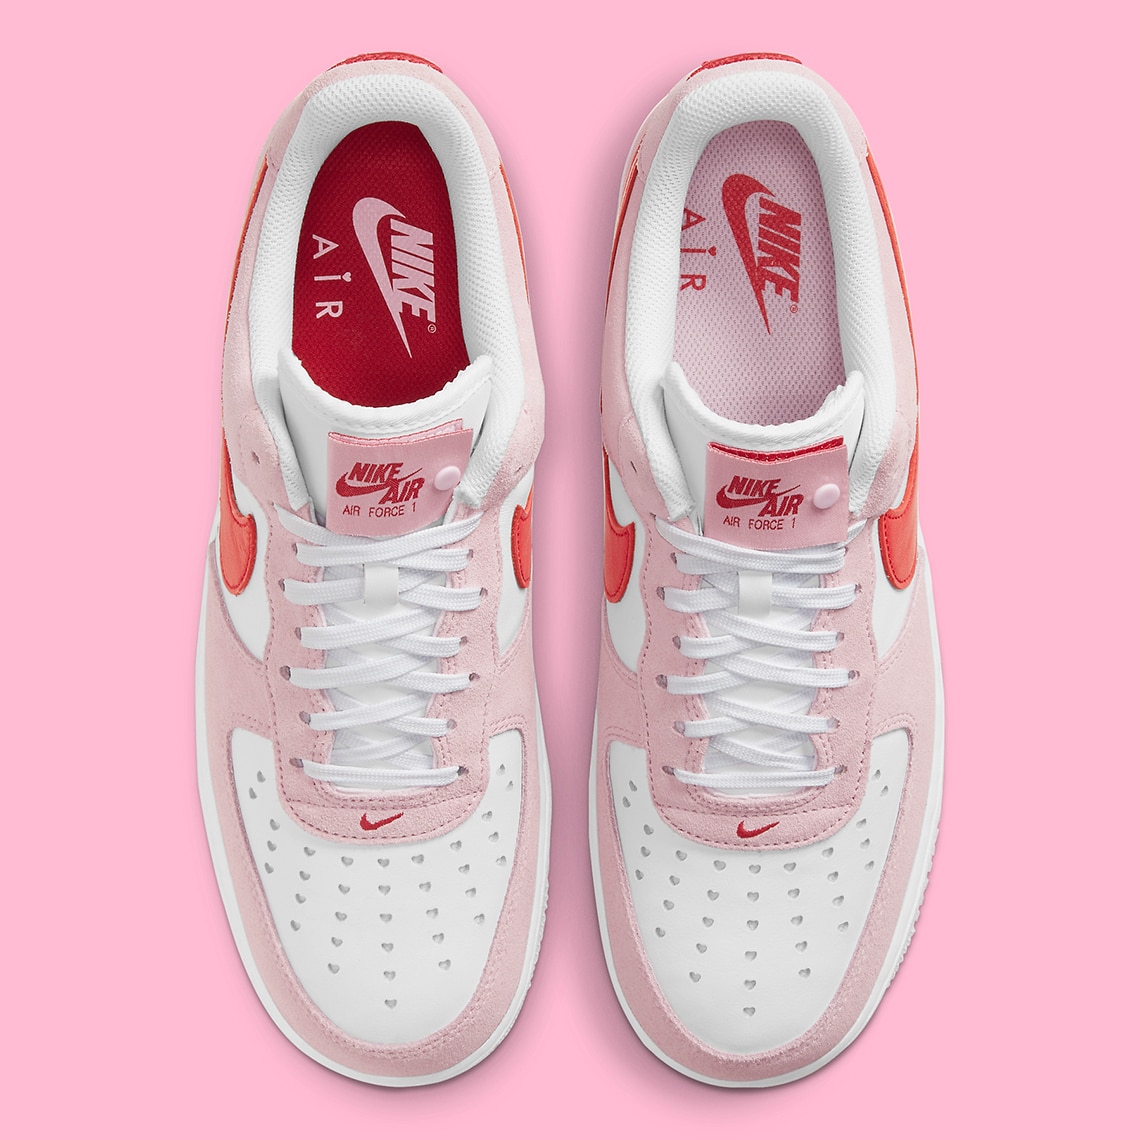 De nieuwe Nike Air Force 1 Love Letter is dé perfecte Valentijnsdate!